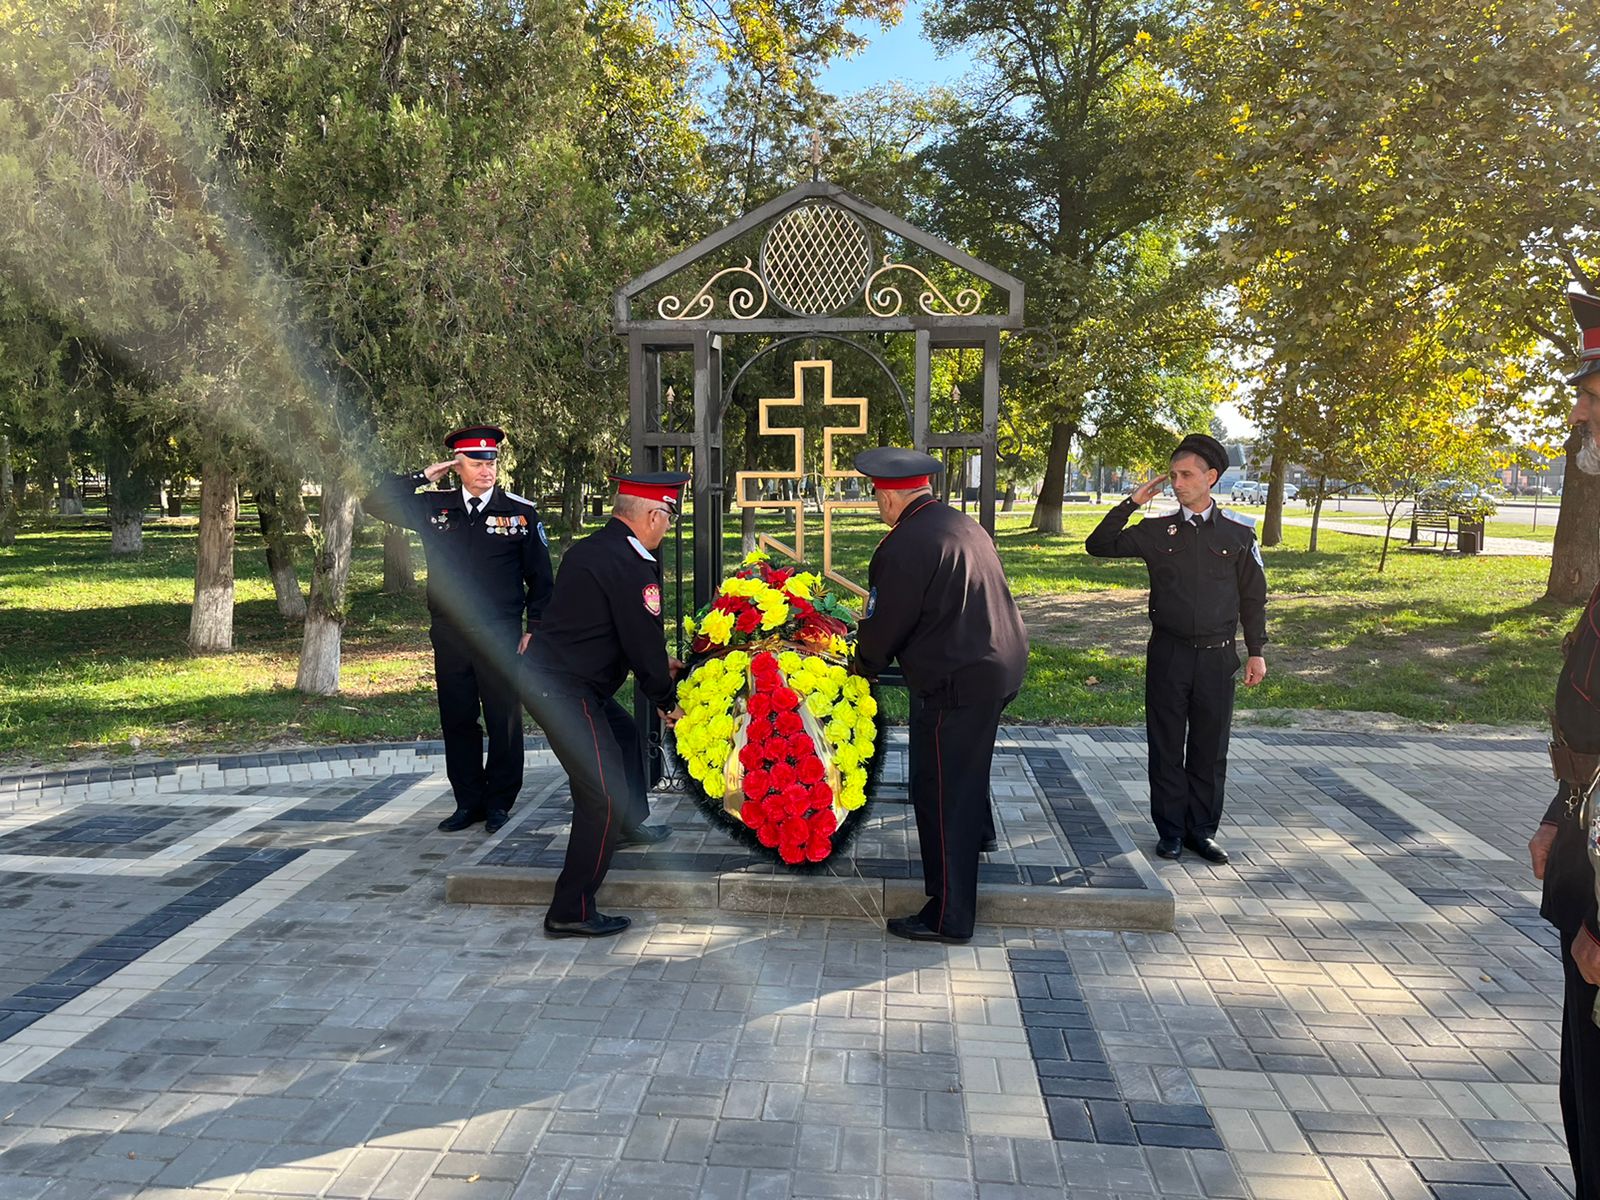 Казаки Калининского РКО собрались около памятника казакам, чтобы отдать дань памяти и отметить 326-ю годовщину образования Кубанского казачьего войска